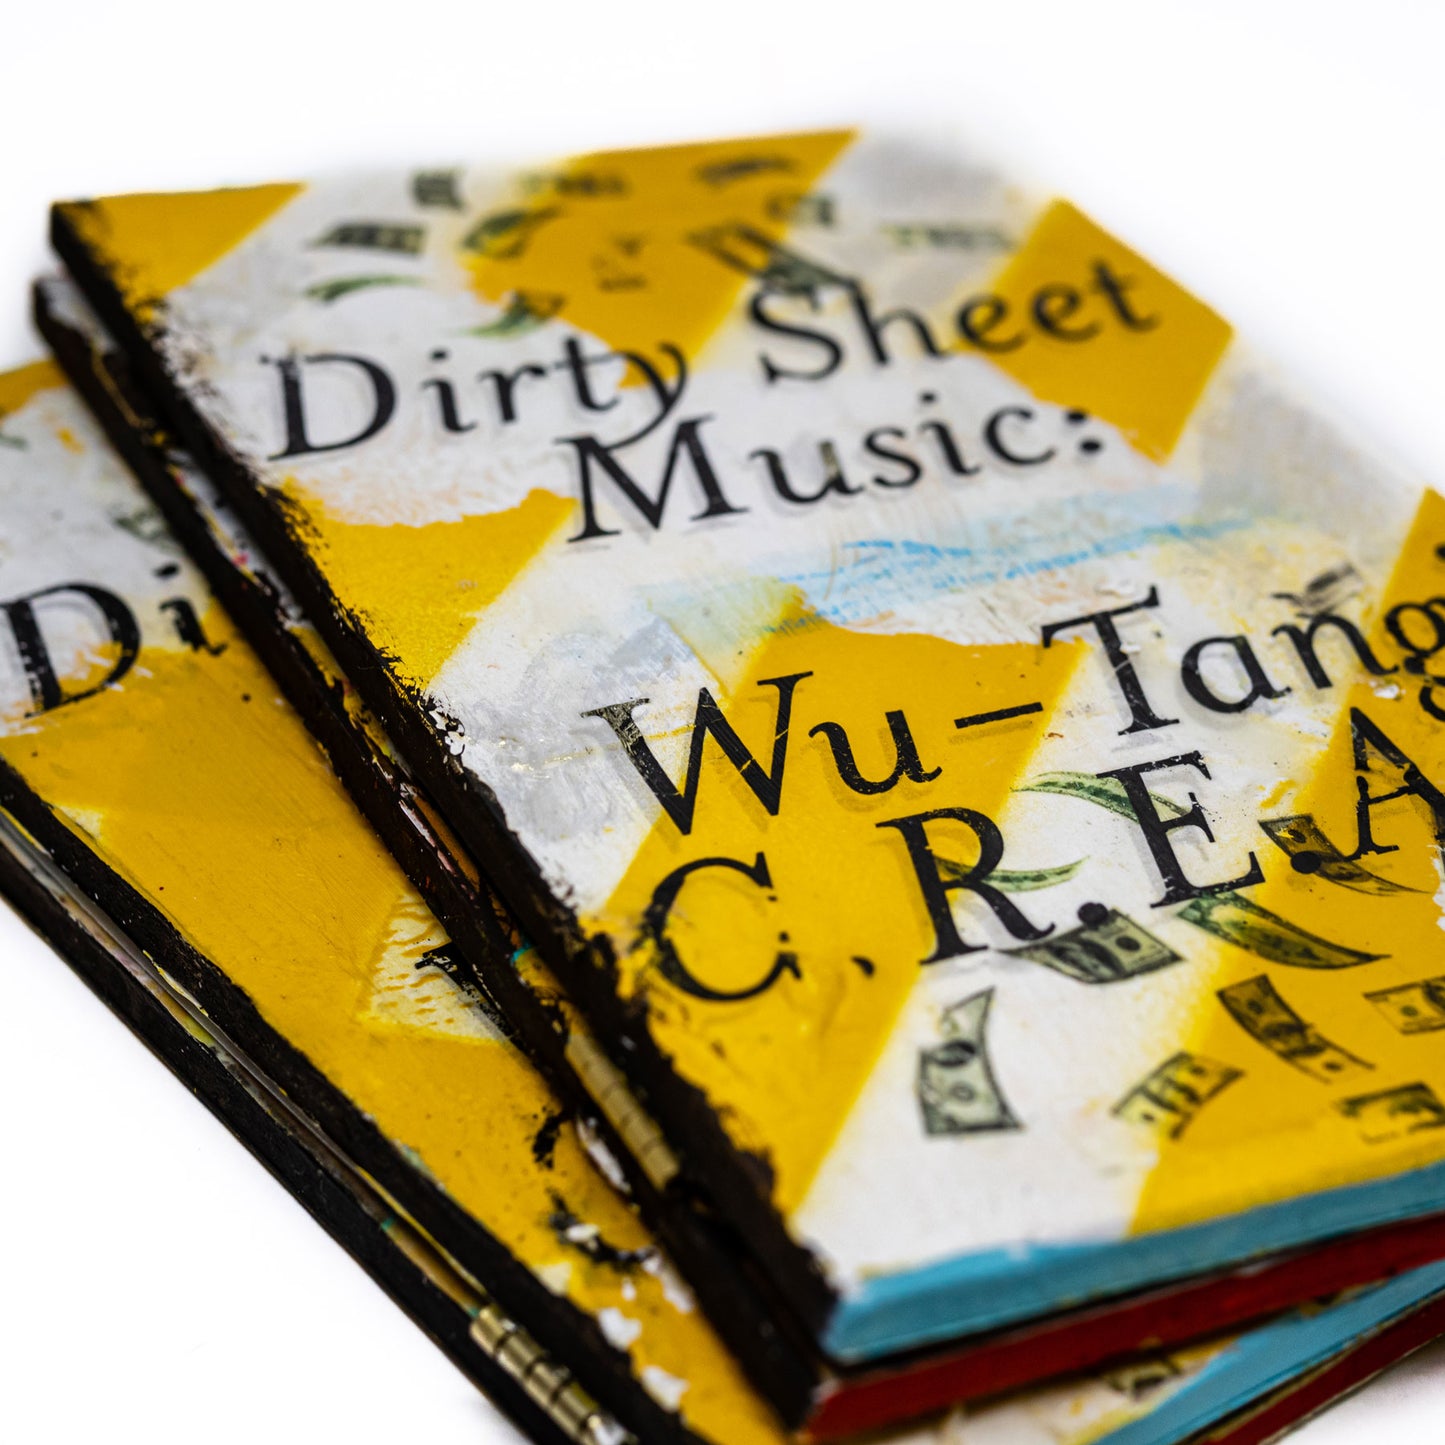 Dirty Sheet Music: Wu-Tang C.R.E.A.M. Zine/Book